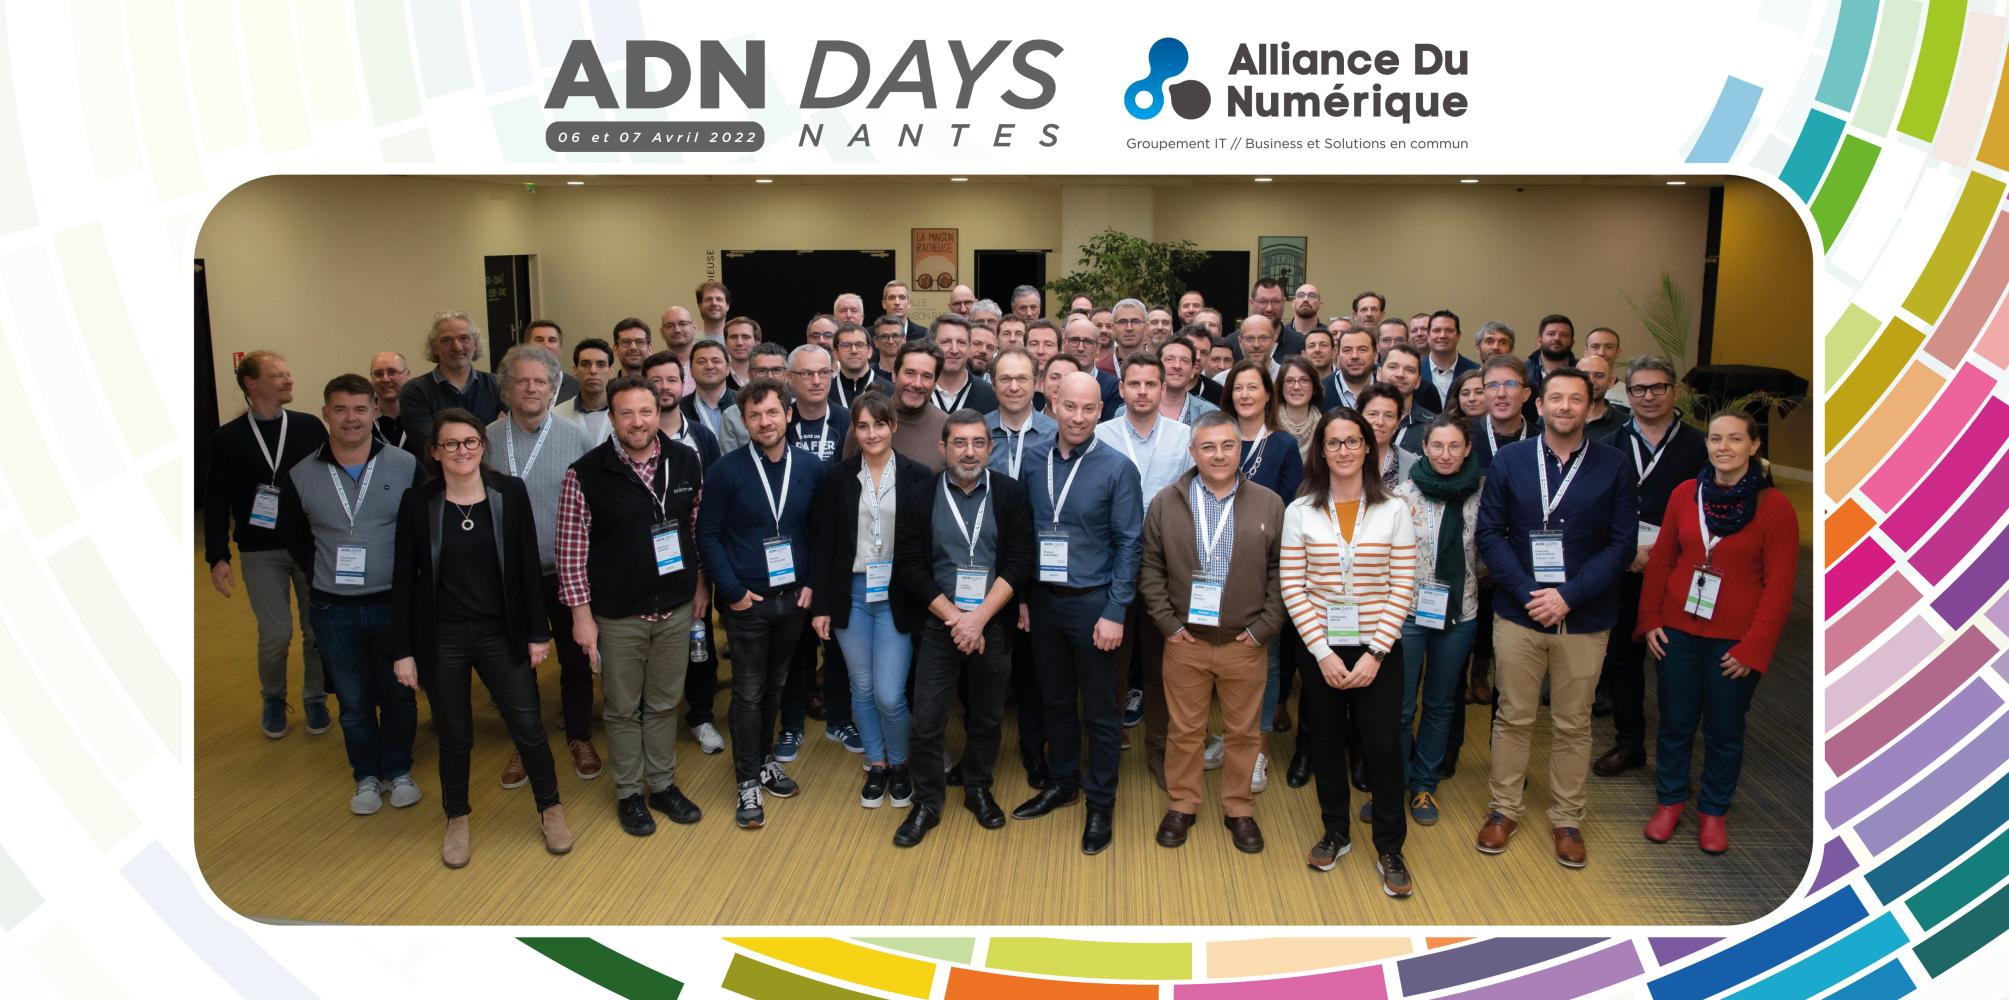 ADN Partners Days Nantes